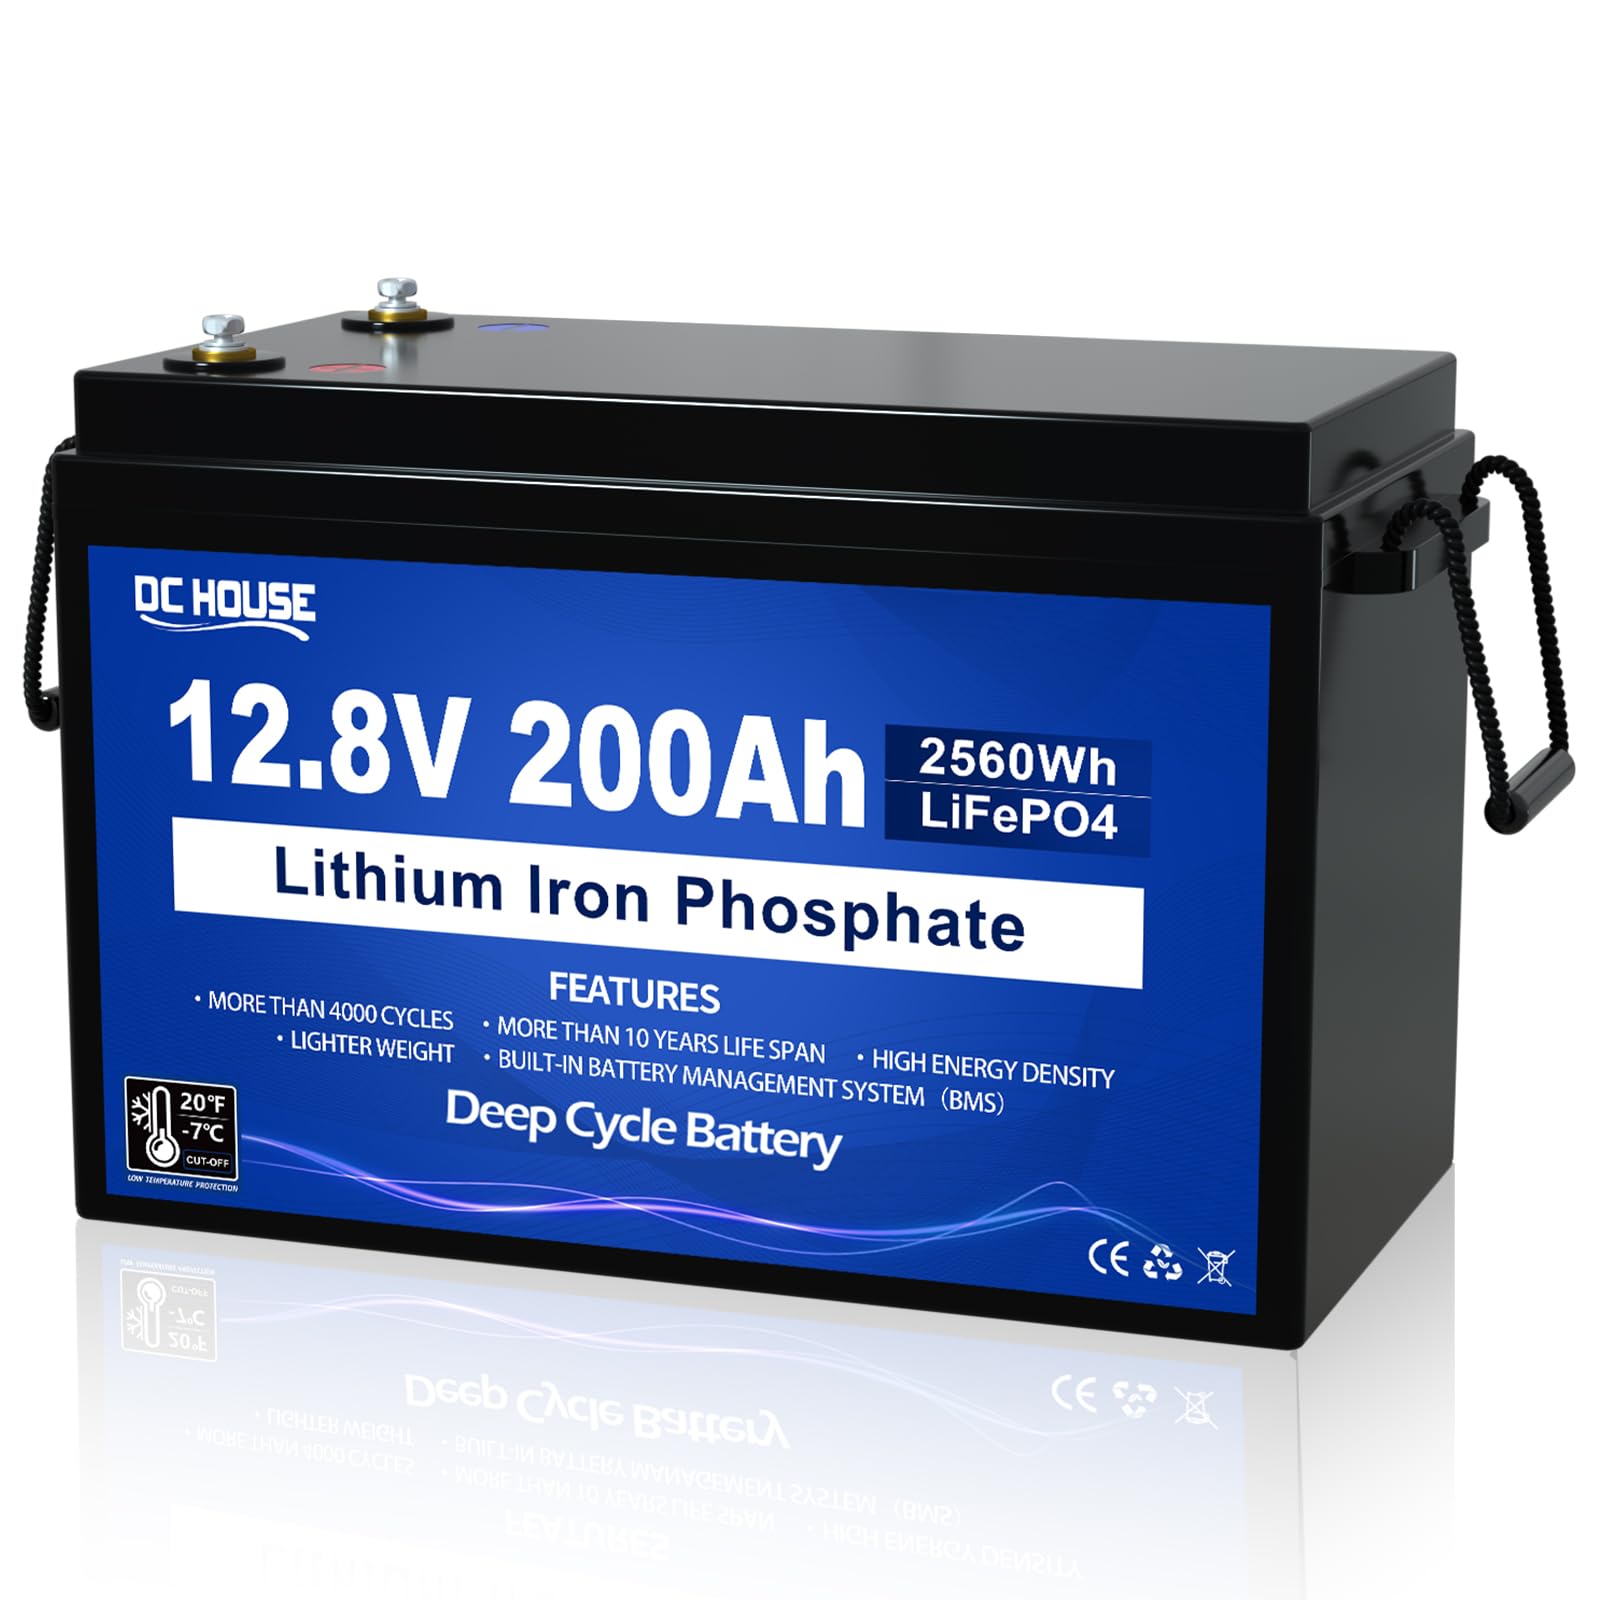 12V 200Ah LiFePO4 Batterie,verbessertes 200A BMS, Tieftemperaturschutz,4000-10000 Zyklen Deep CycleLithiumbatterie, perfekt für Wohnmobile,Solaranlagen,Wohnwagen, netzunabhängige Anwendungen von DCHOUSE